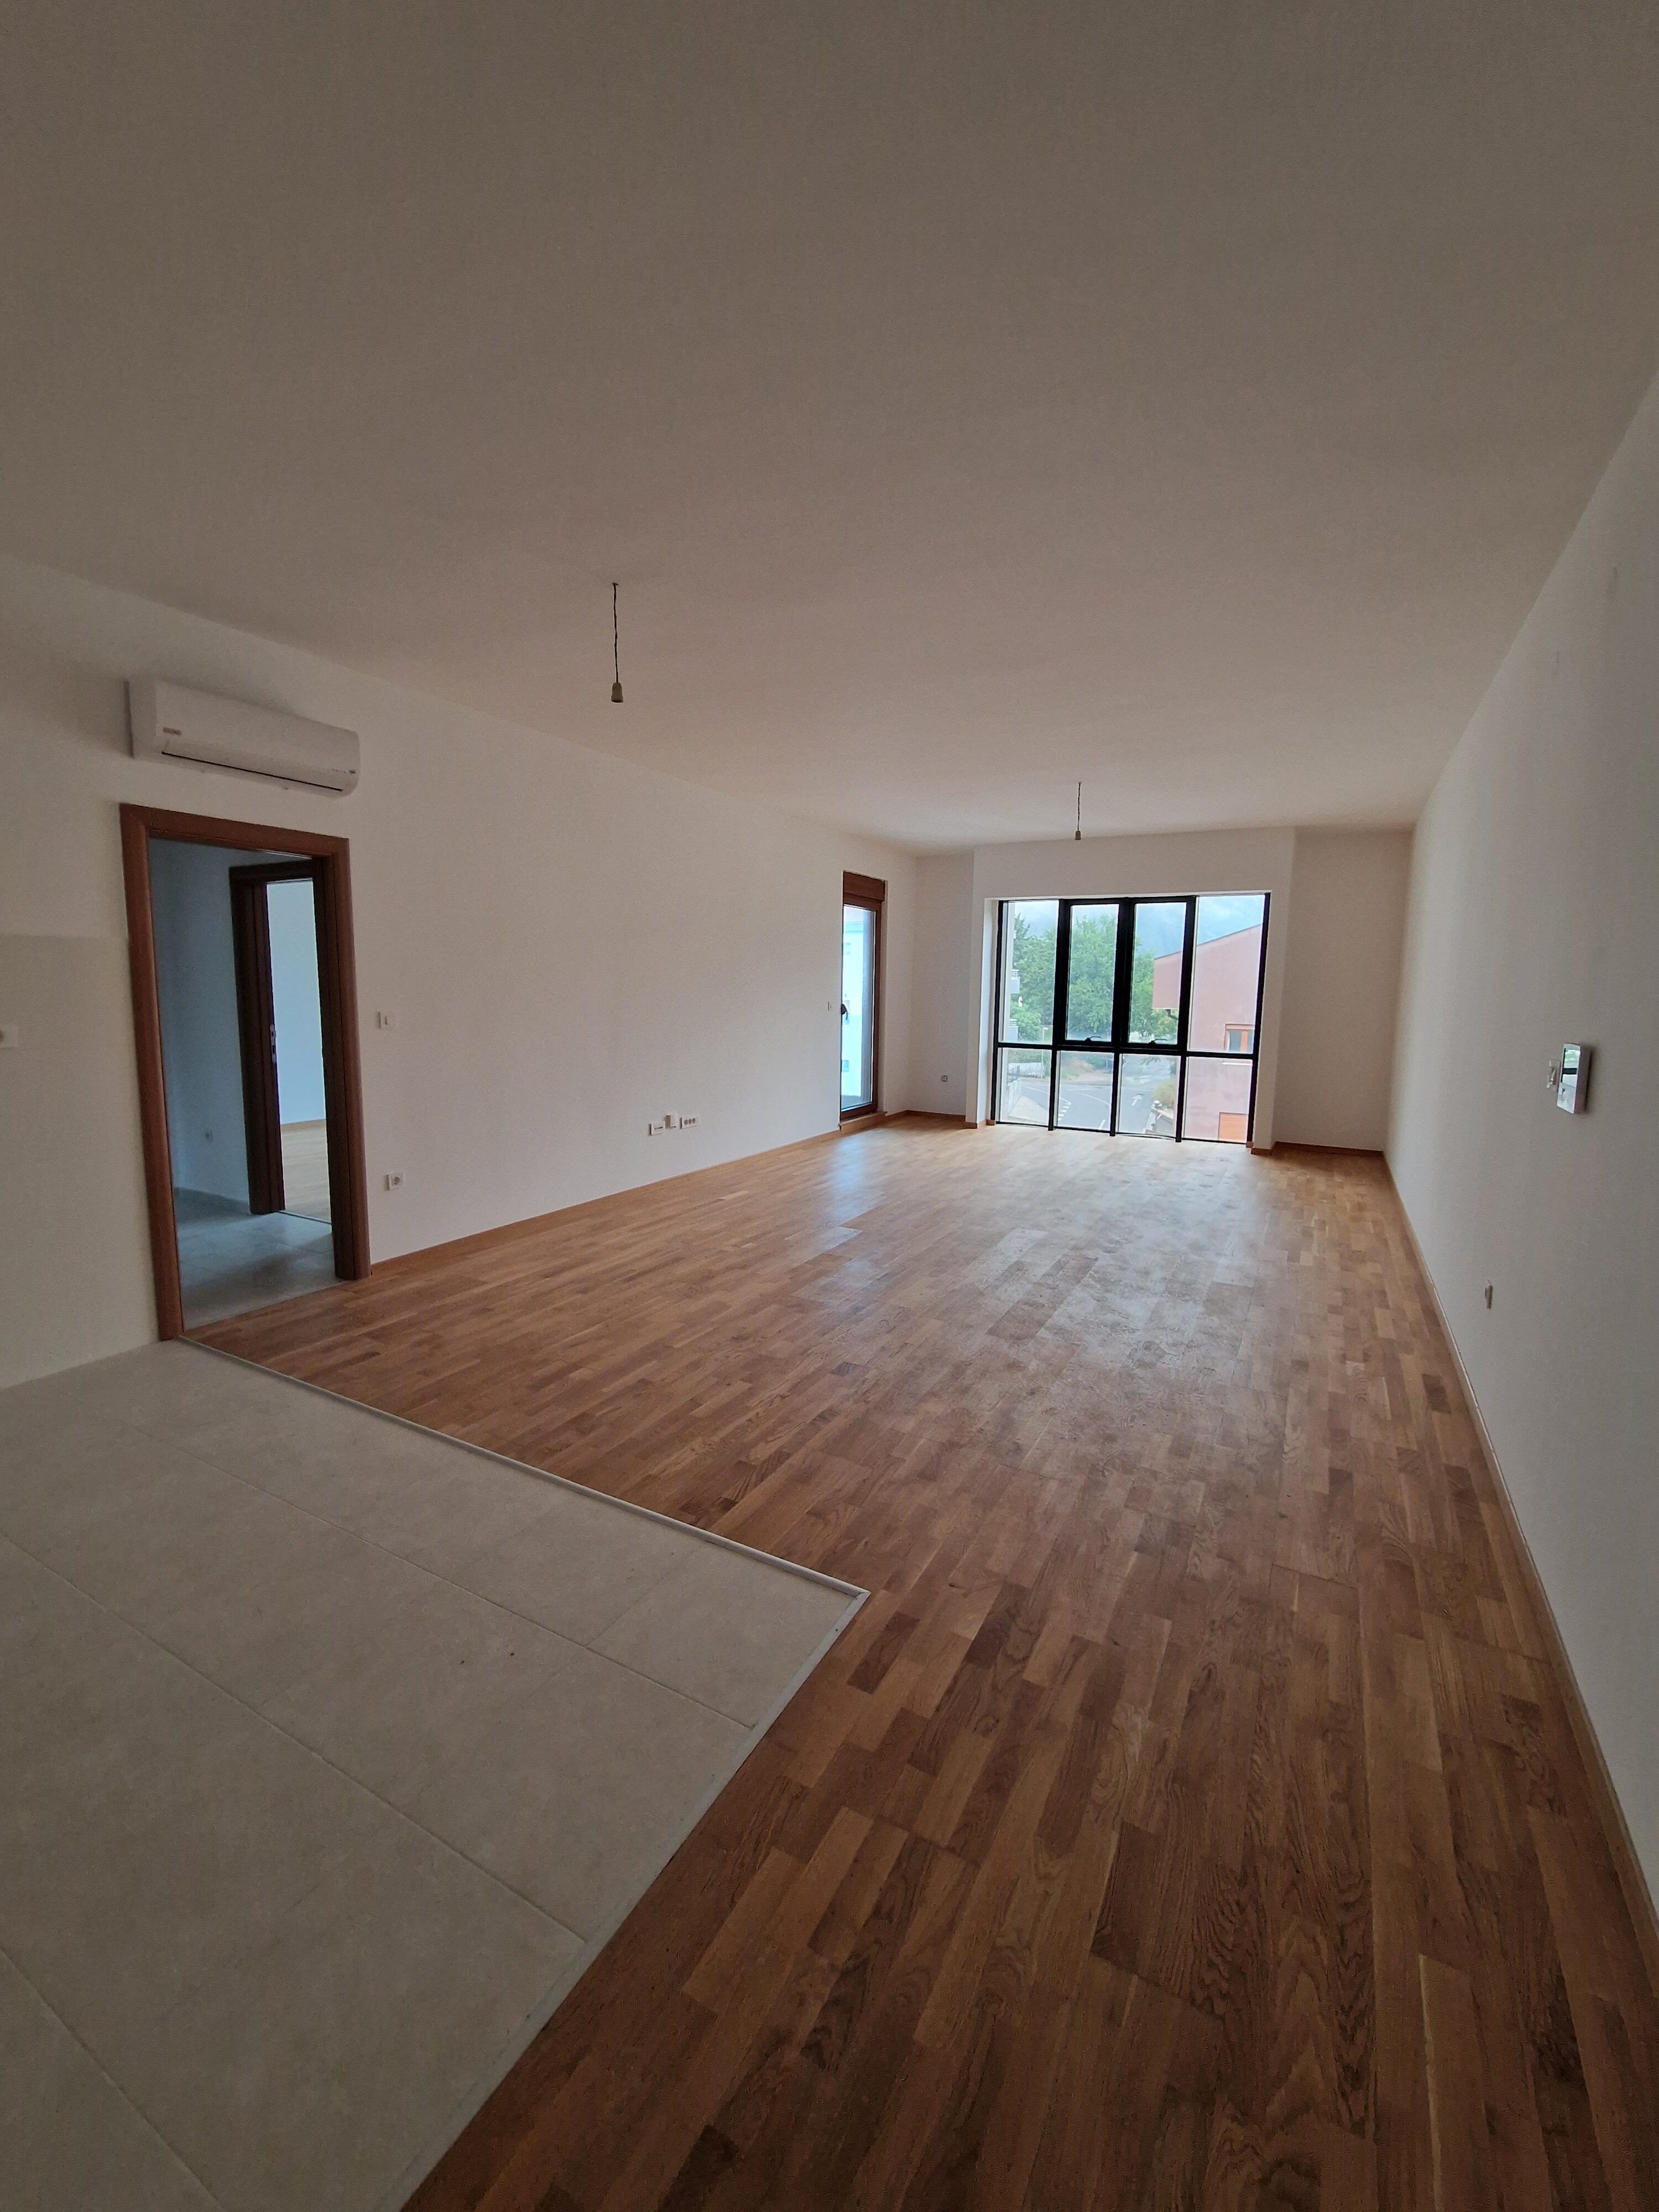 Wohnungen zum Verkauf in einem neu gebauten Gebäude in Kotor